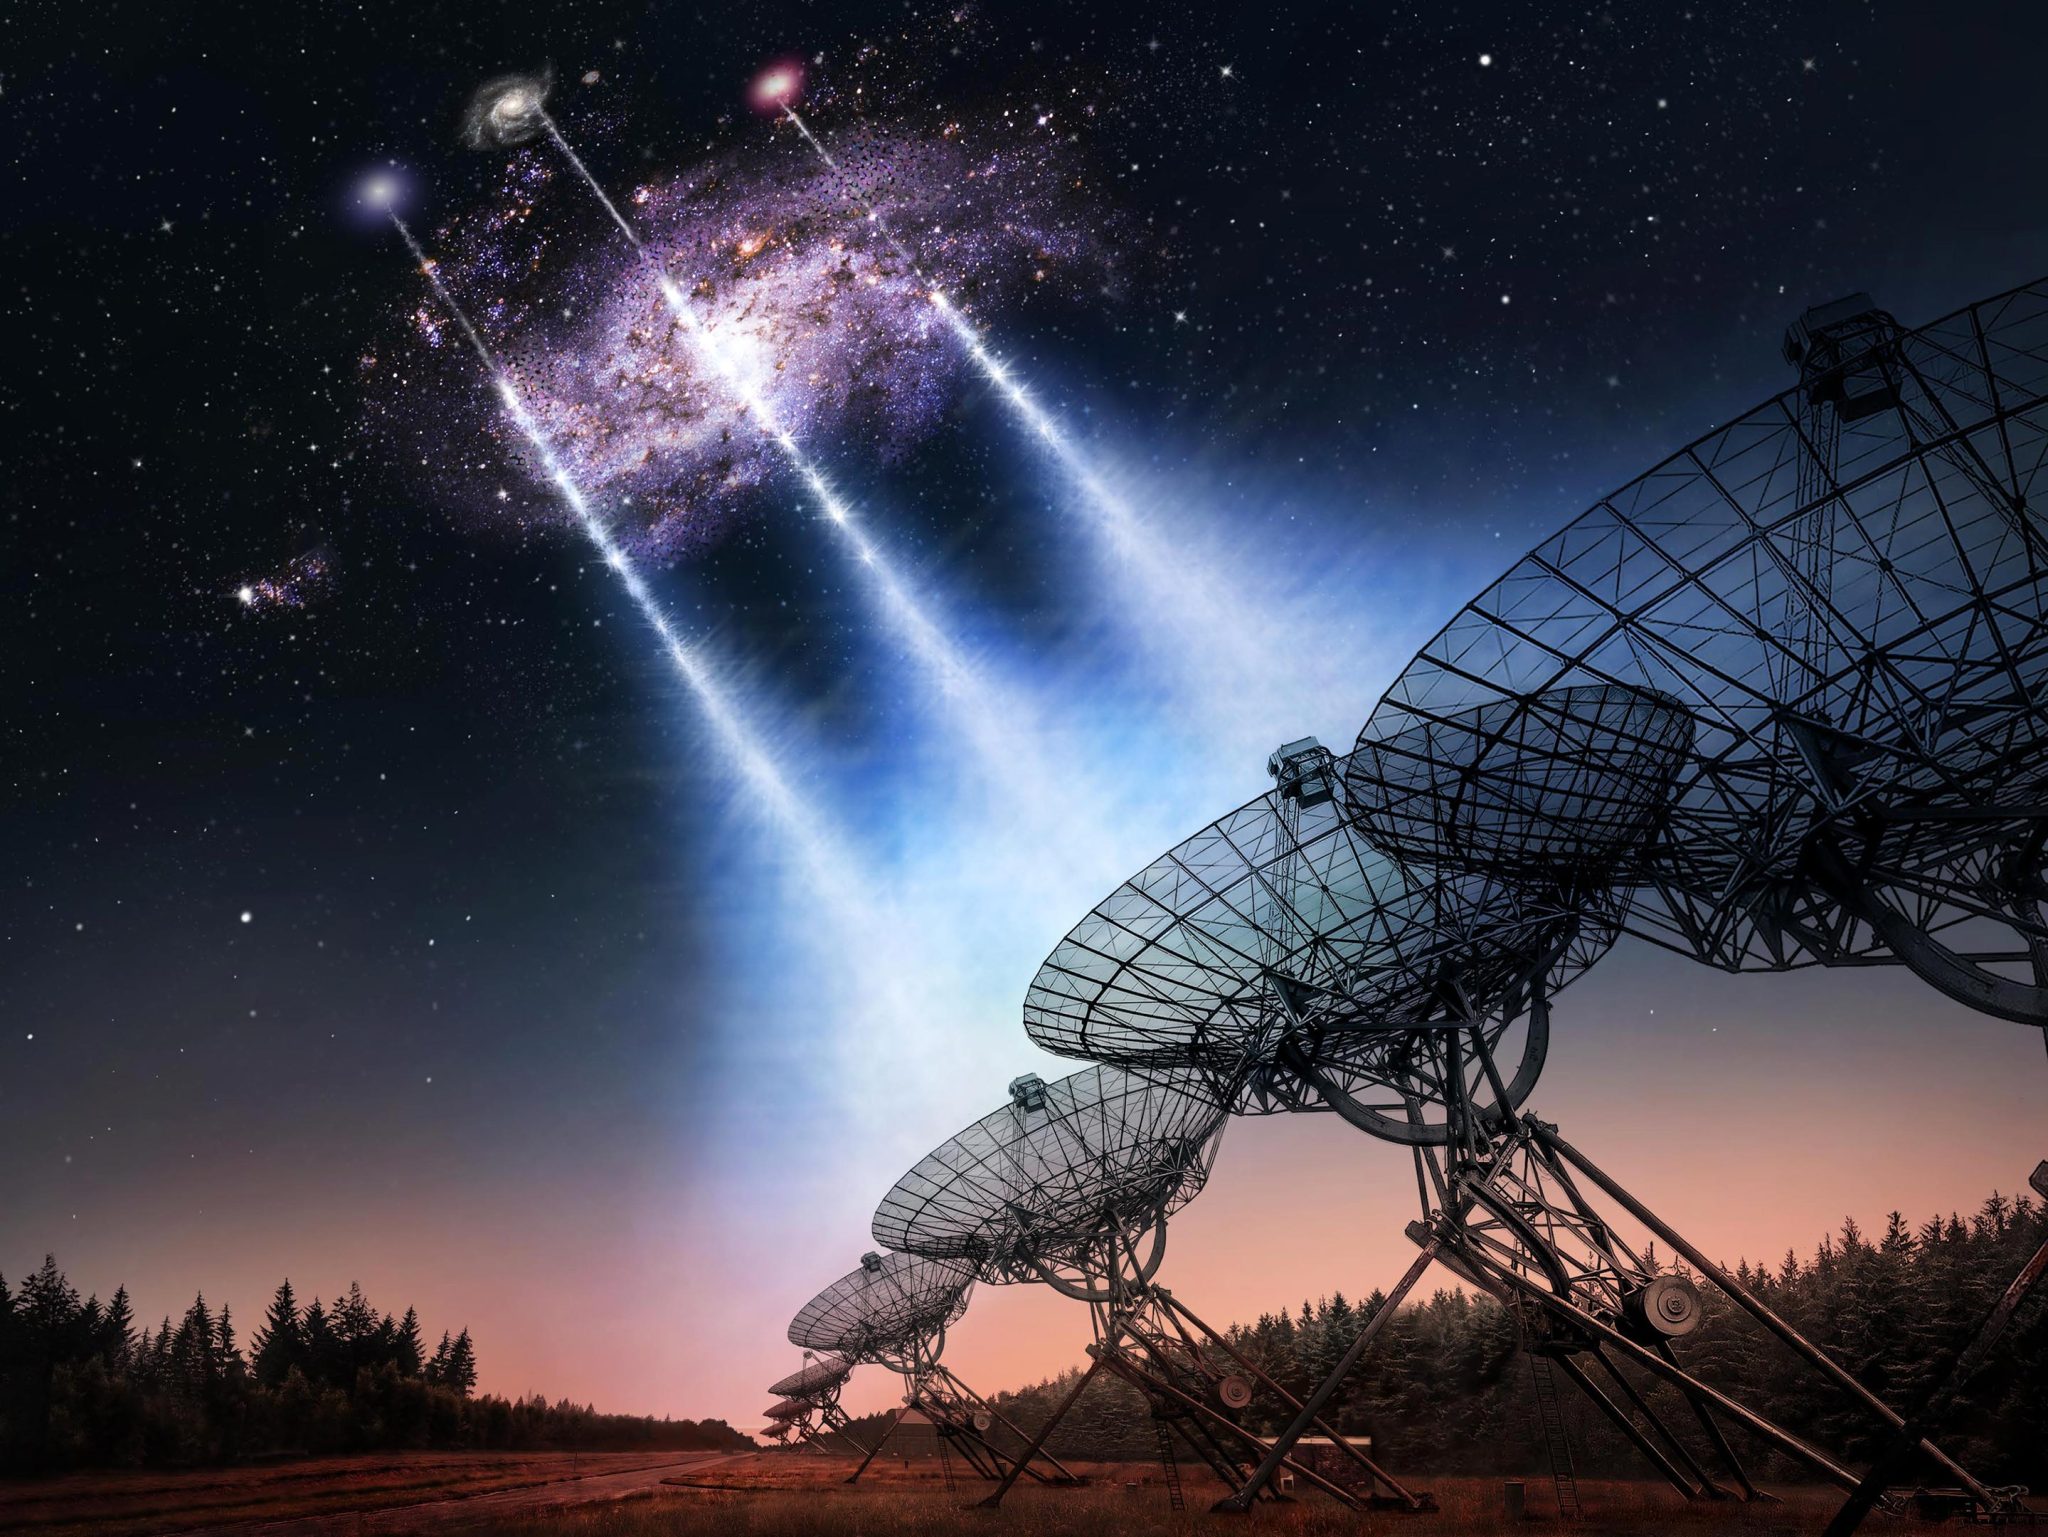 Οι αστρονόμοι εντοπίζουν εξαιρετικά ισχυρές, γρήγορες ραδιοεκρήξεις που εκτρέπουν έναν κοντινό γαλαξία